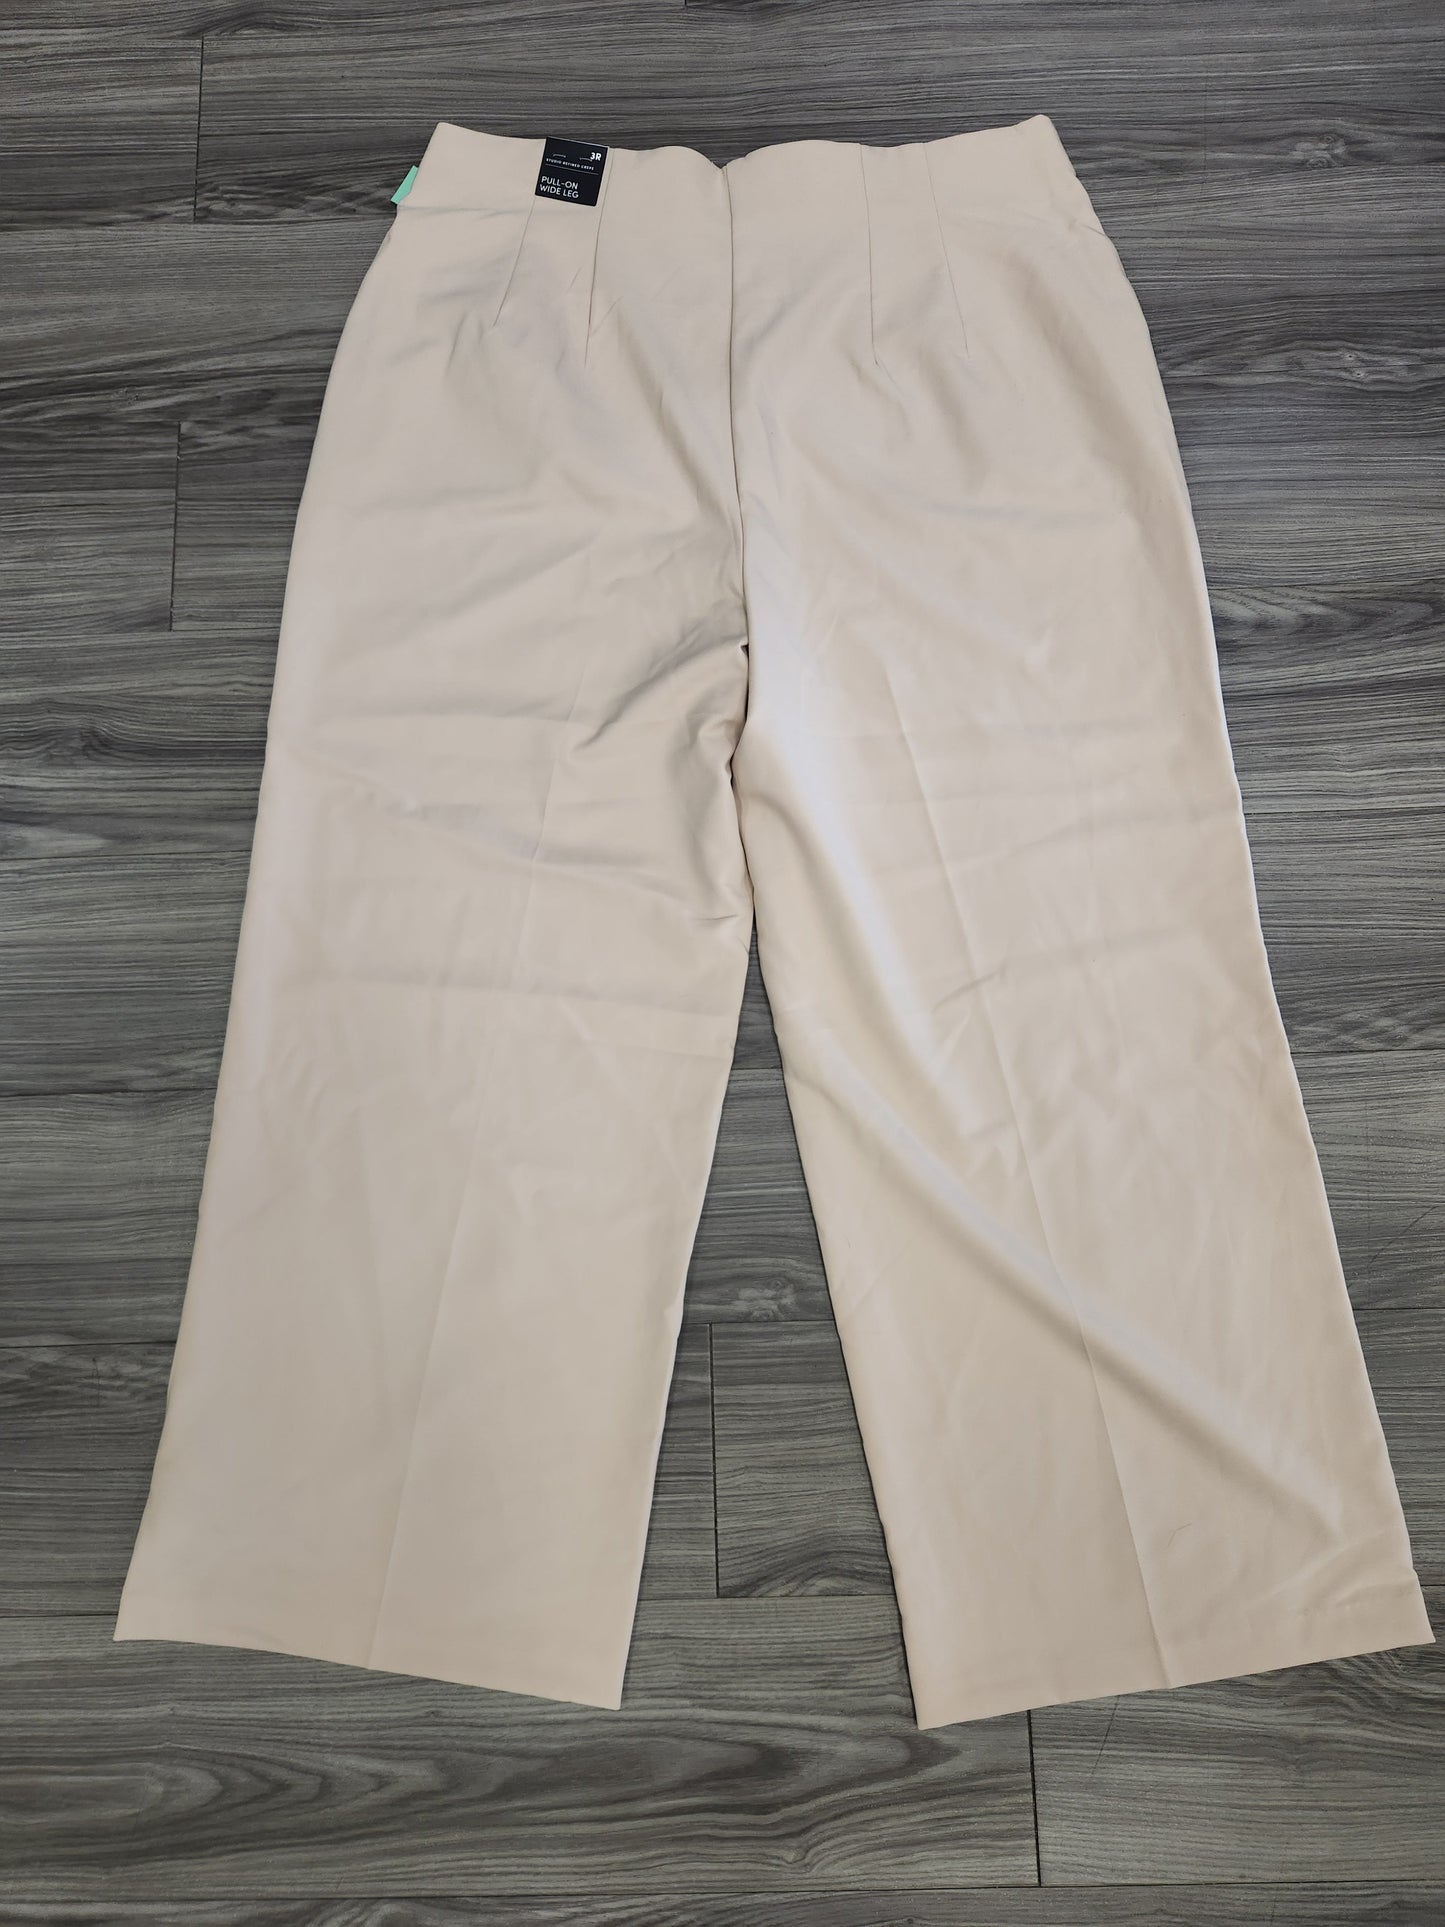 Tan Pants Dress Torrid, Size 3x